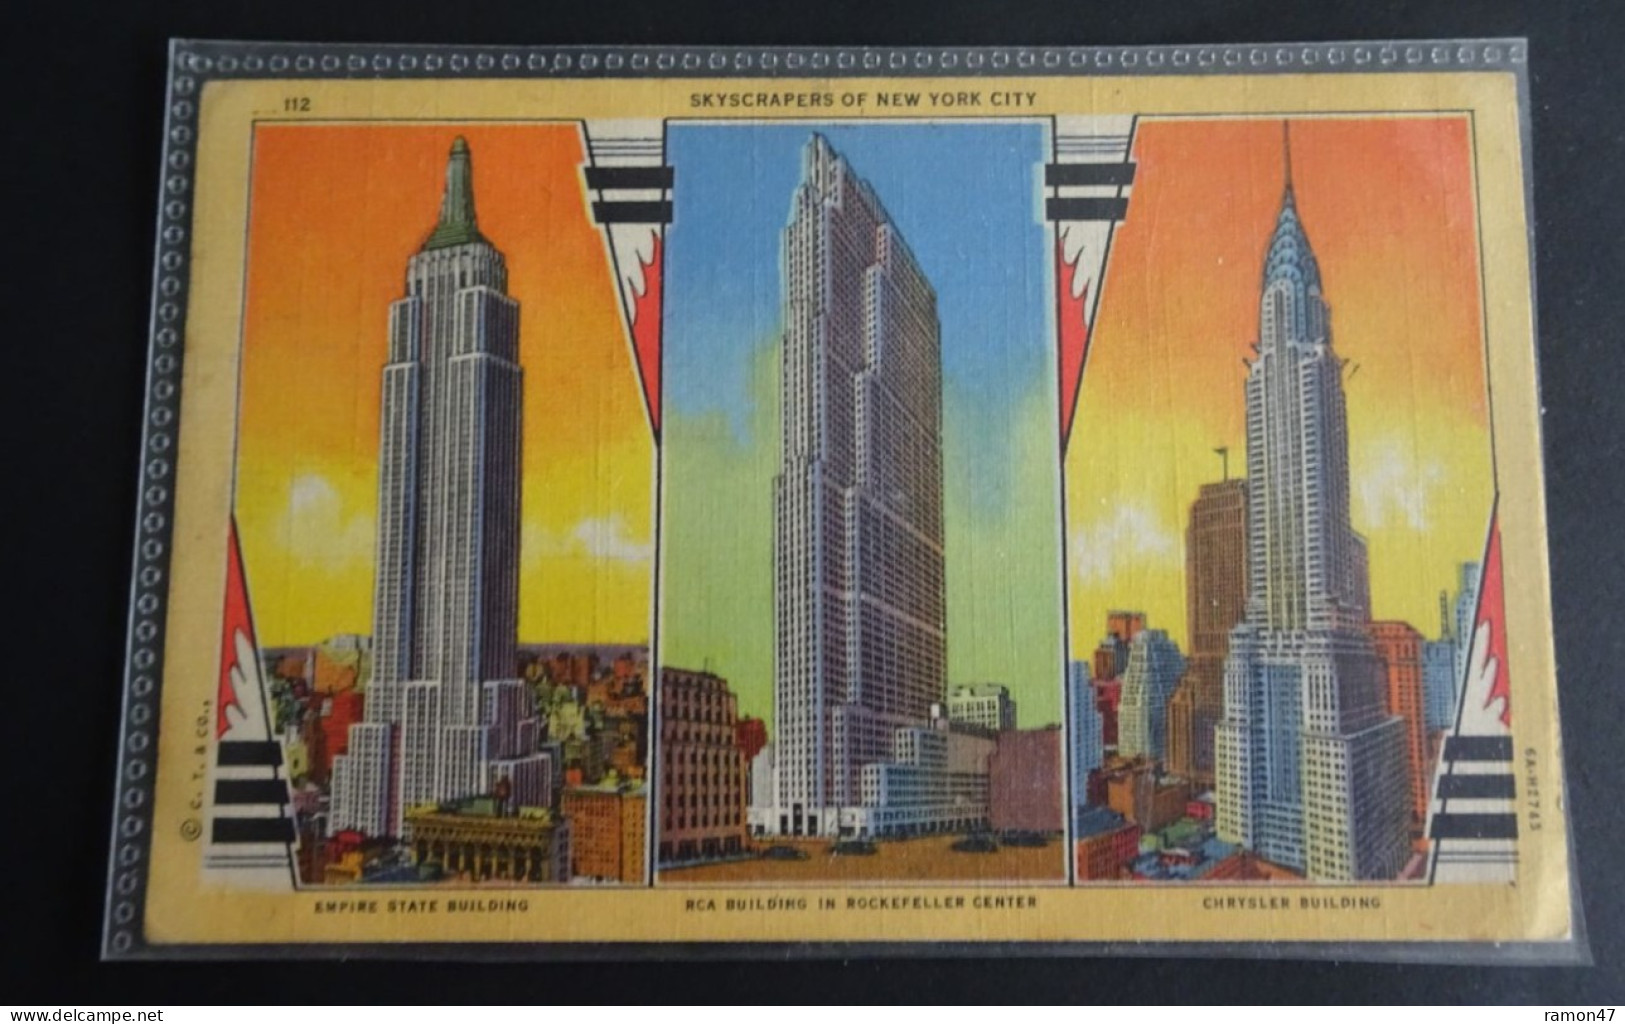 New York City - Skyscrapers - Alfred Mainzer, New York City - Genuine Curteich-Chicago "C.T. Art-Colortone" - # 112 - Manhattan